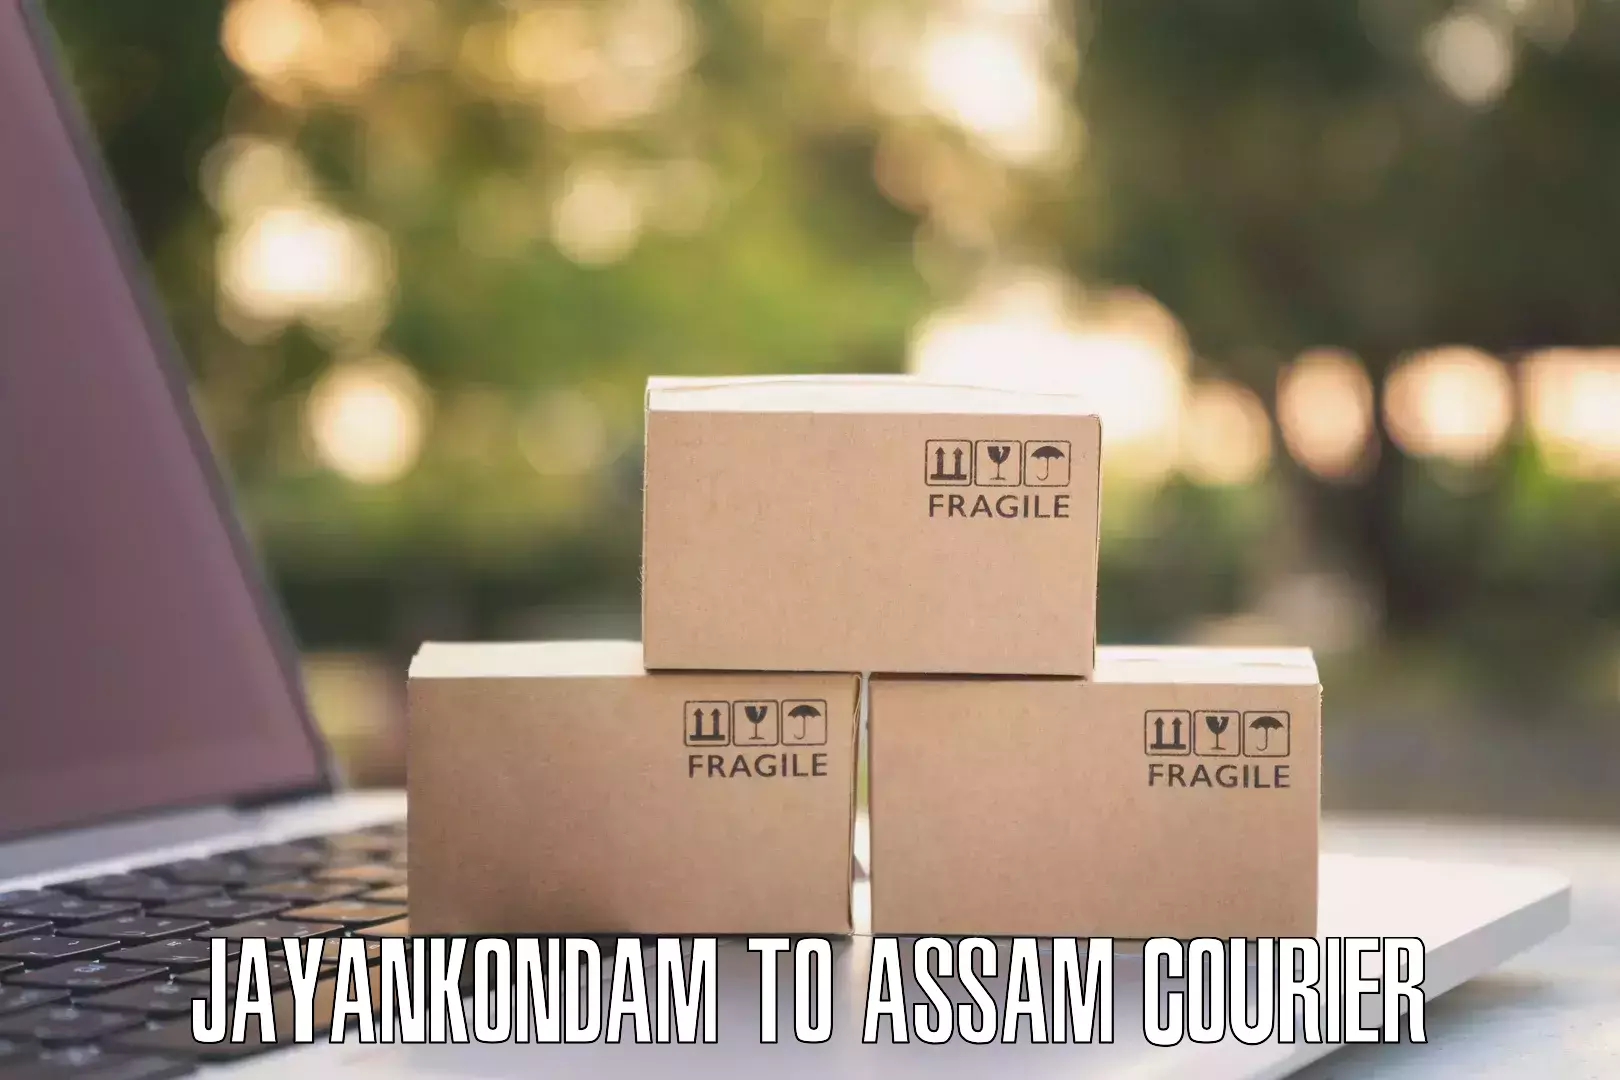 Online courier booking Jayankondam to Amoni